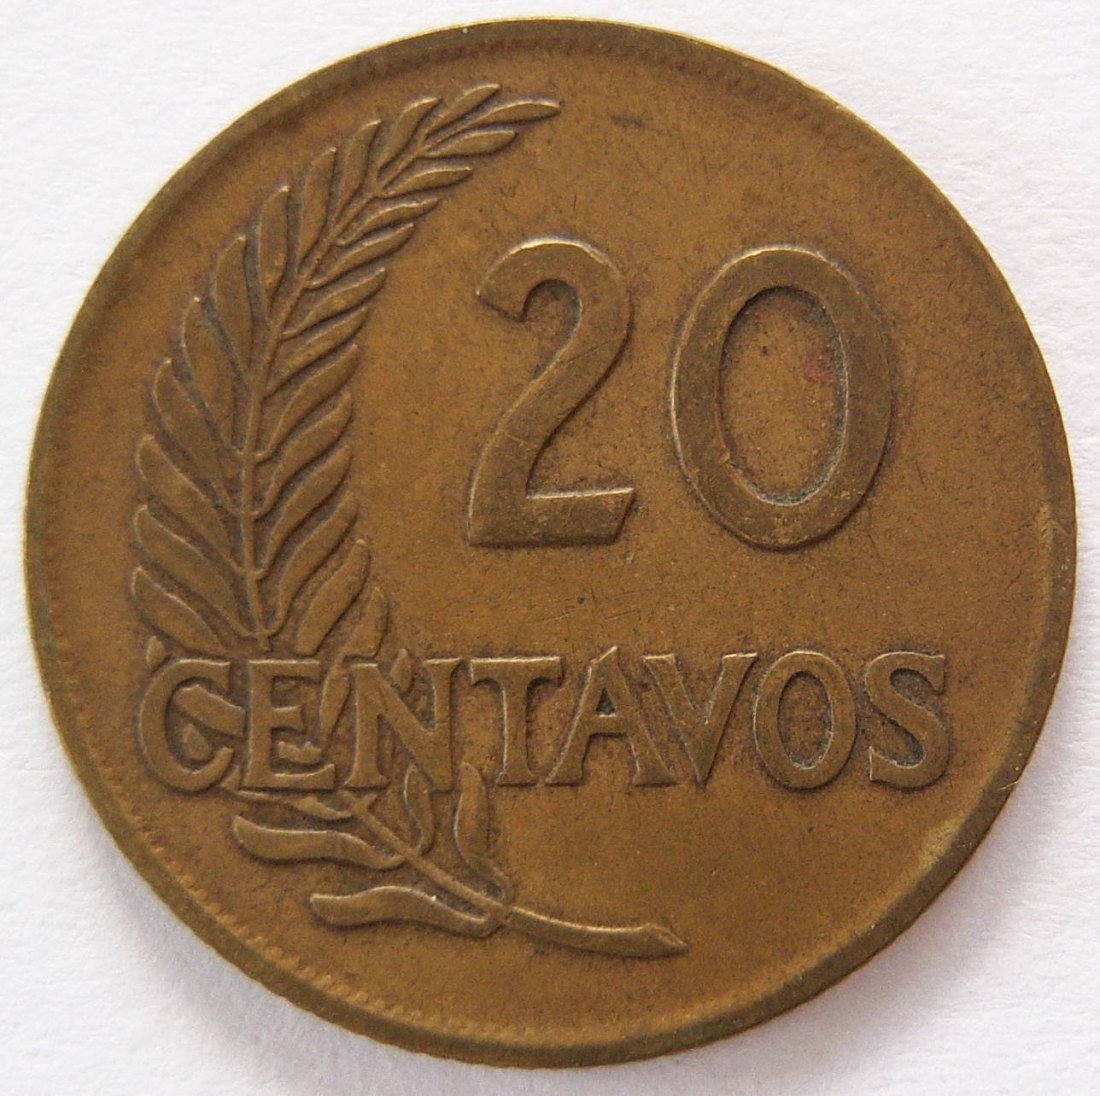  Peru 20 Centavos 1958   